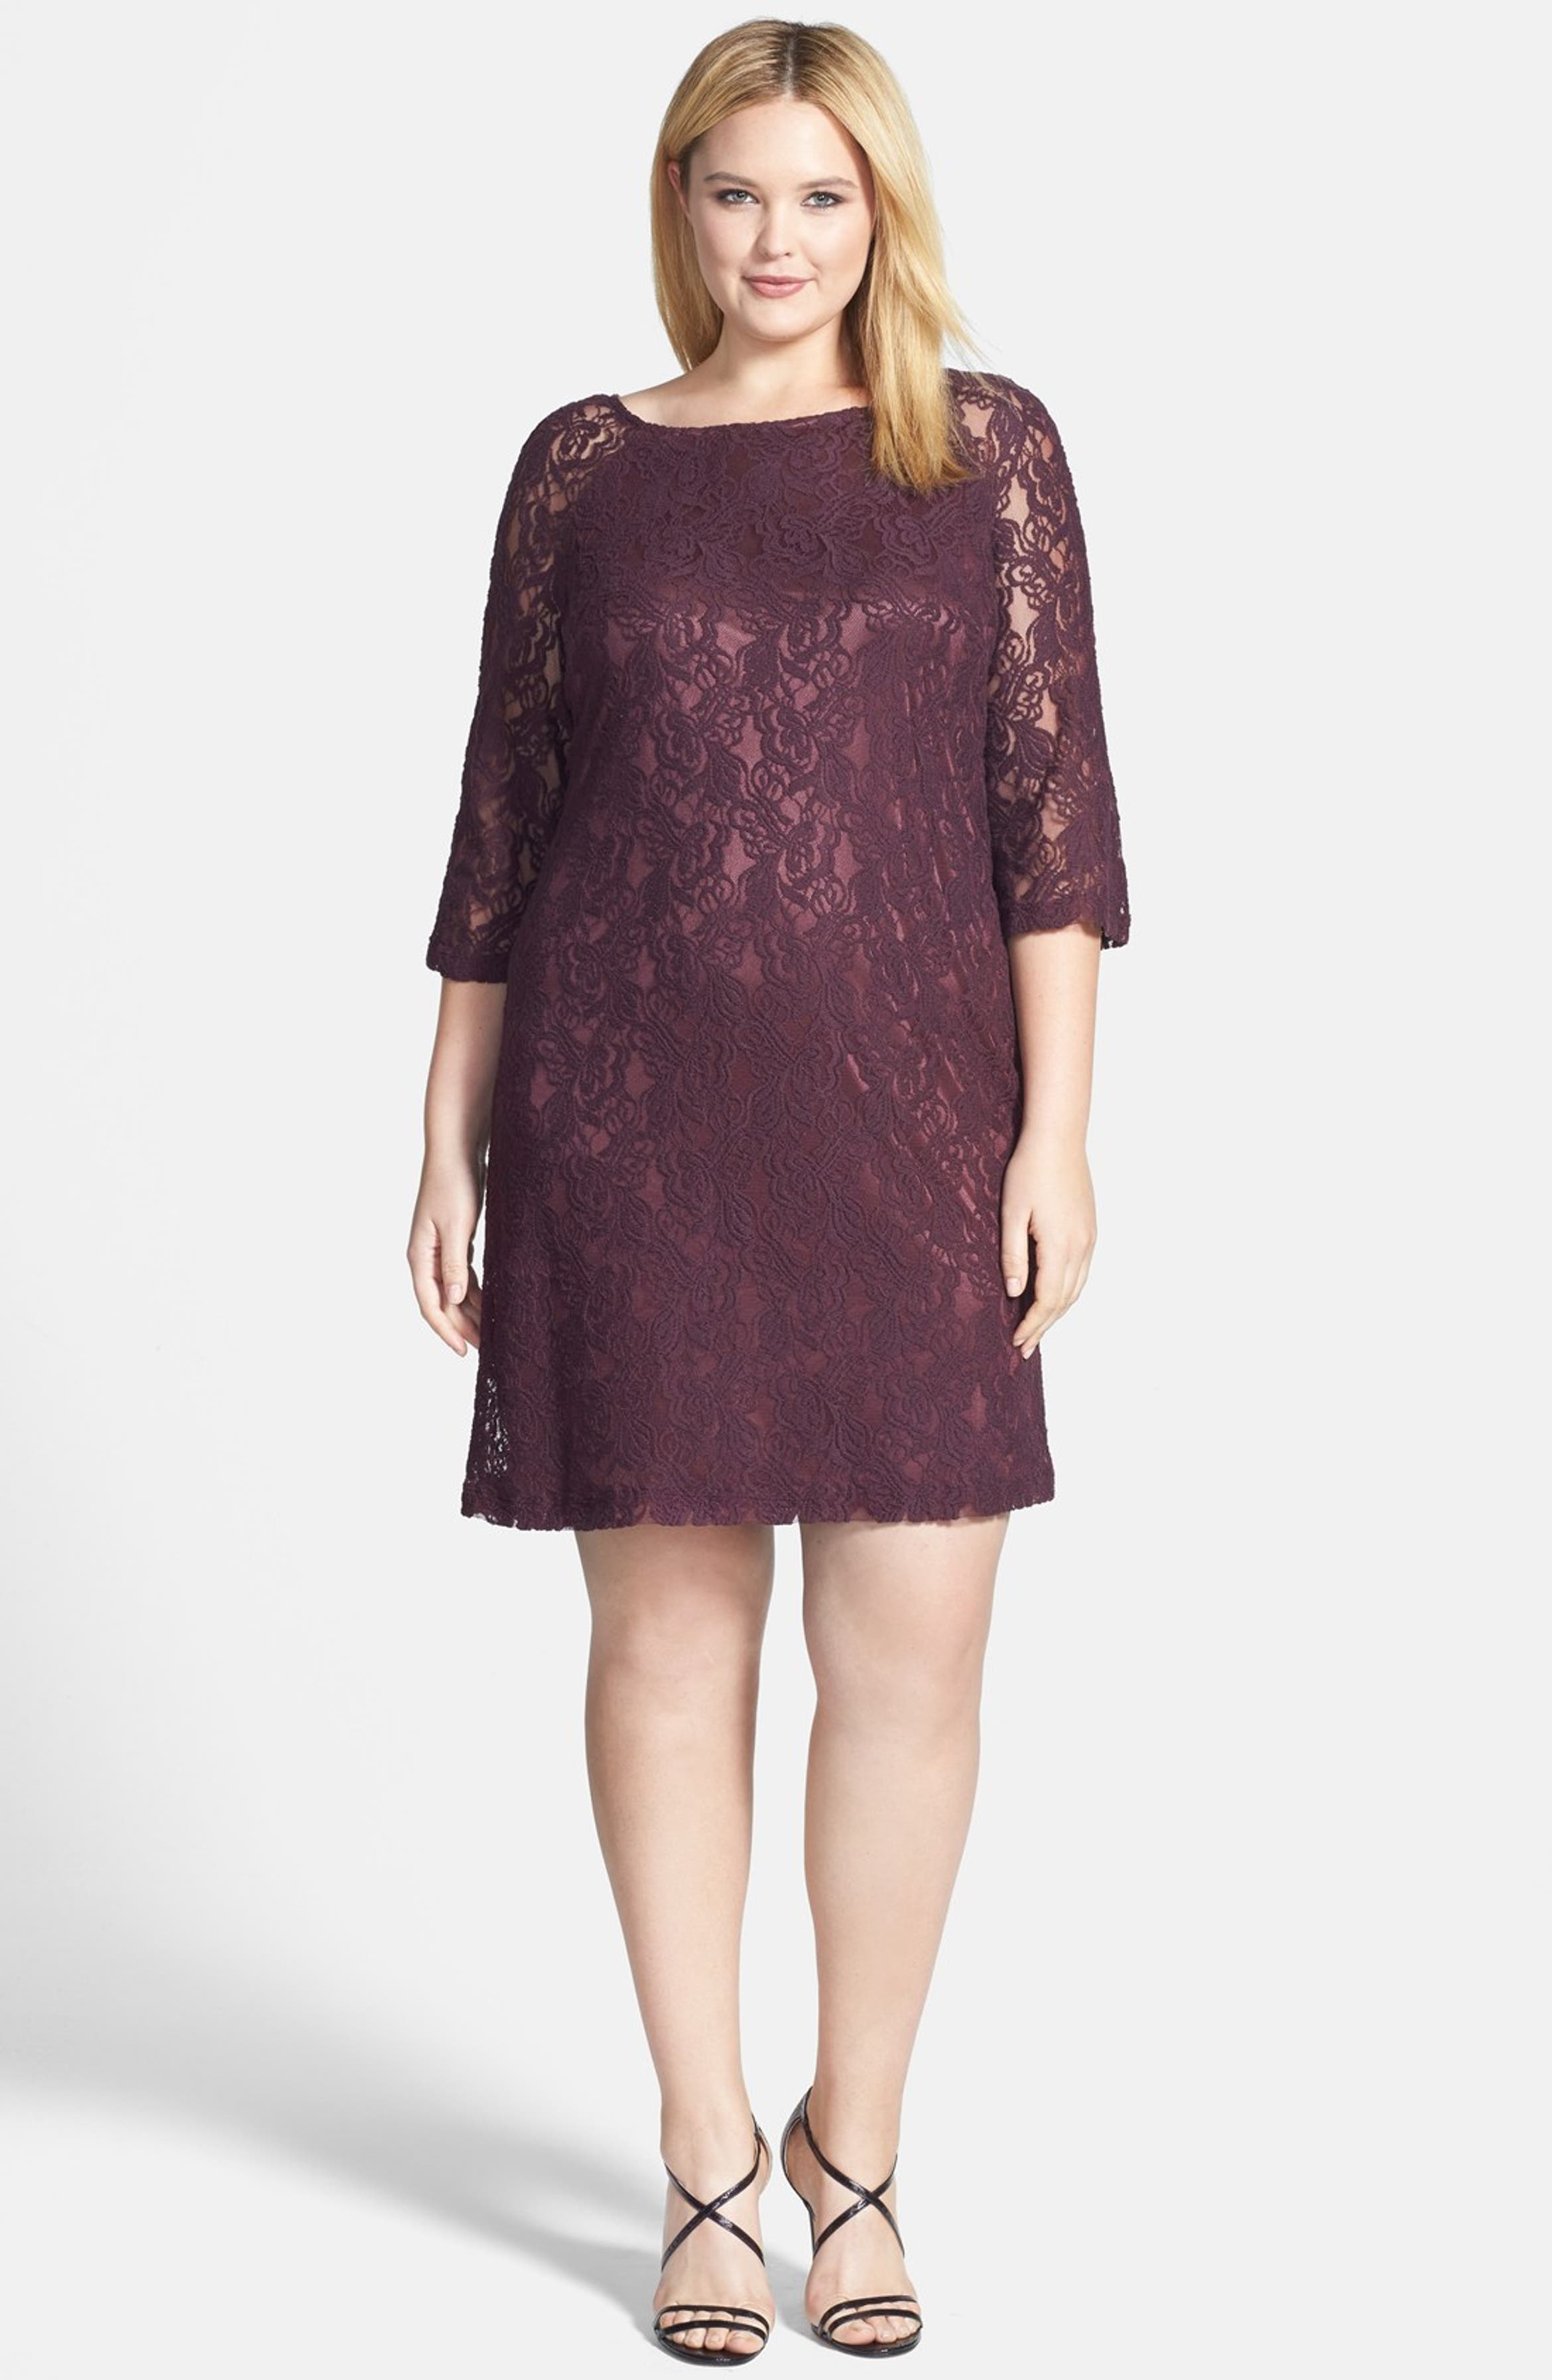 Taylor Dresses A-Line Lace Shift Dress (Plus Size) | Nordstrom